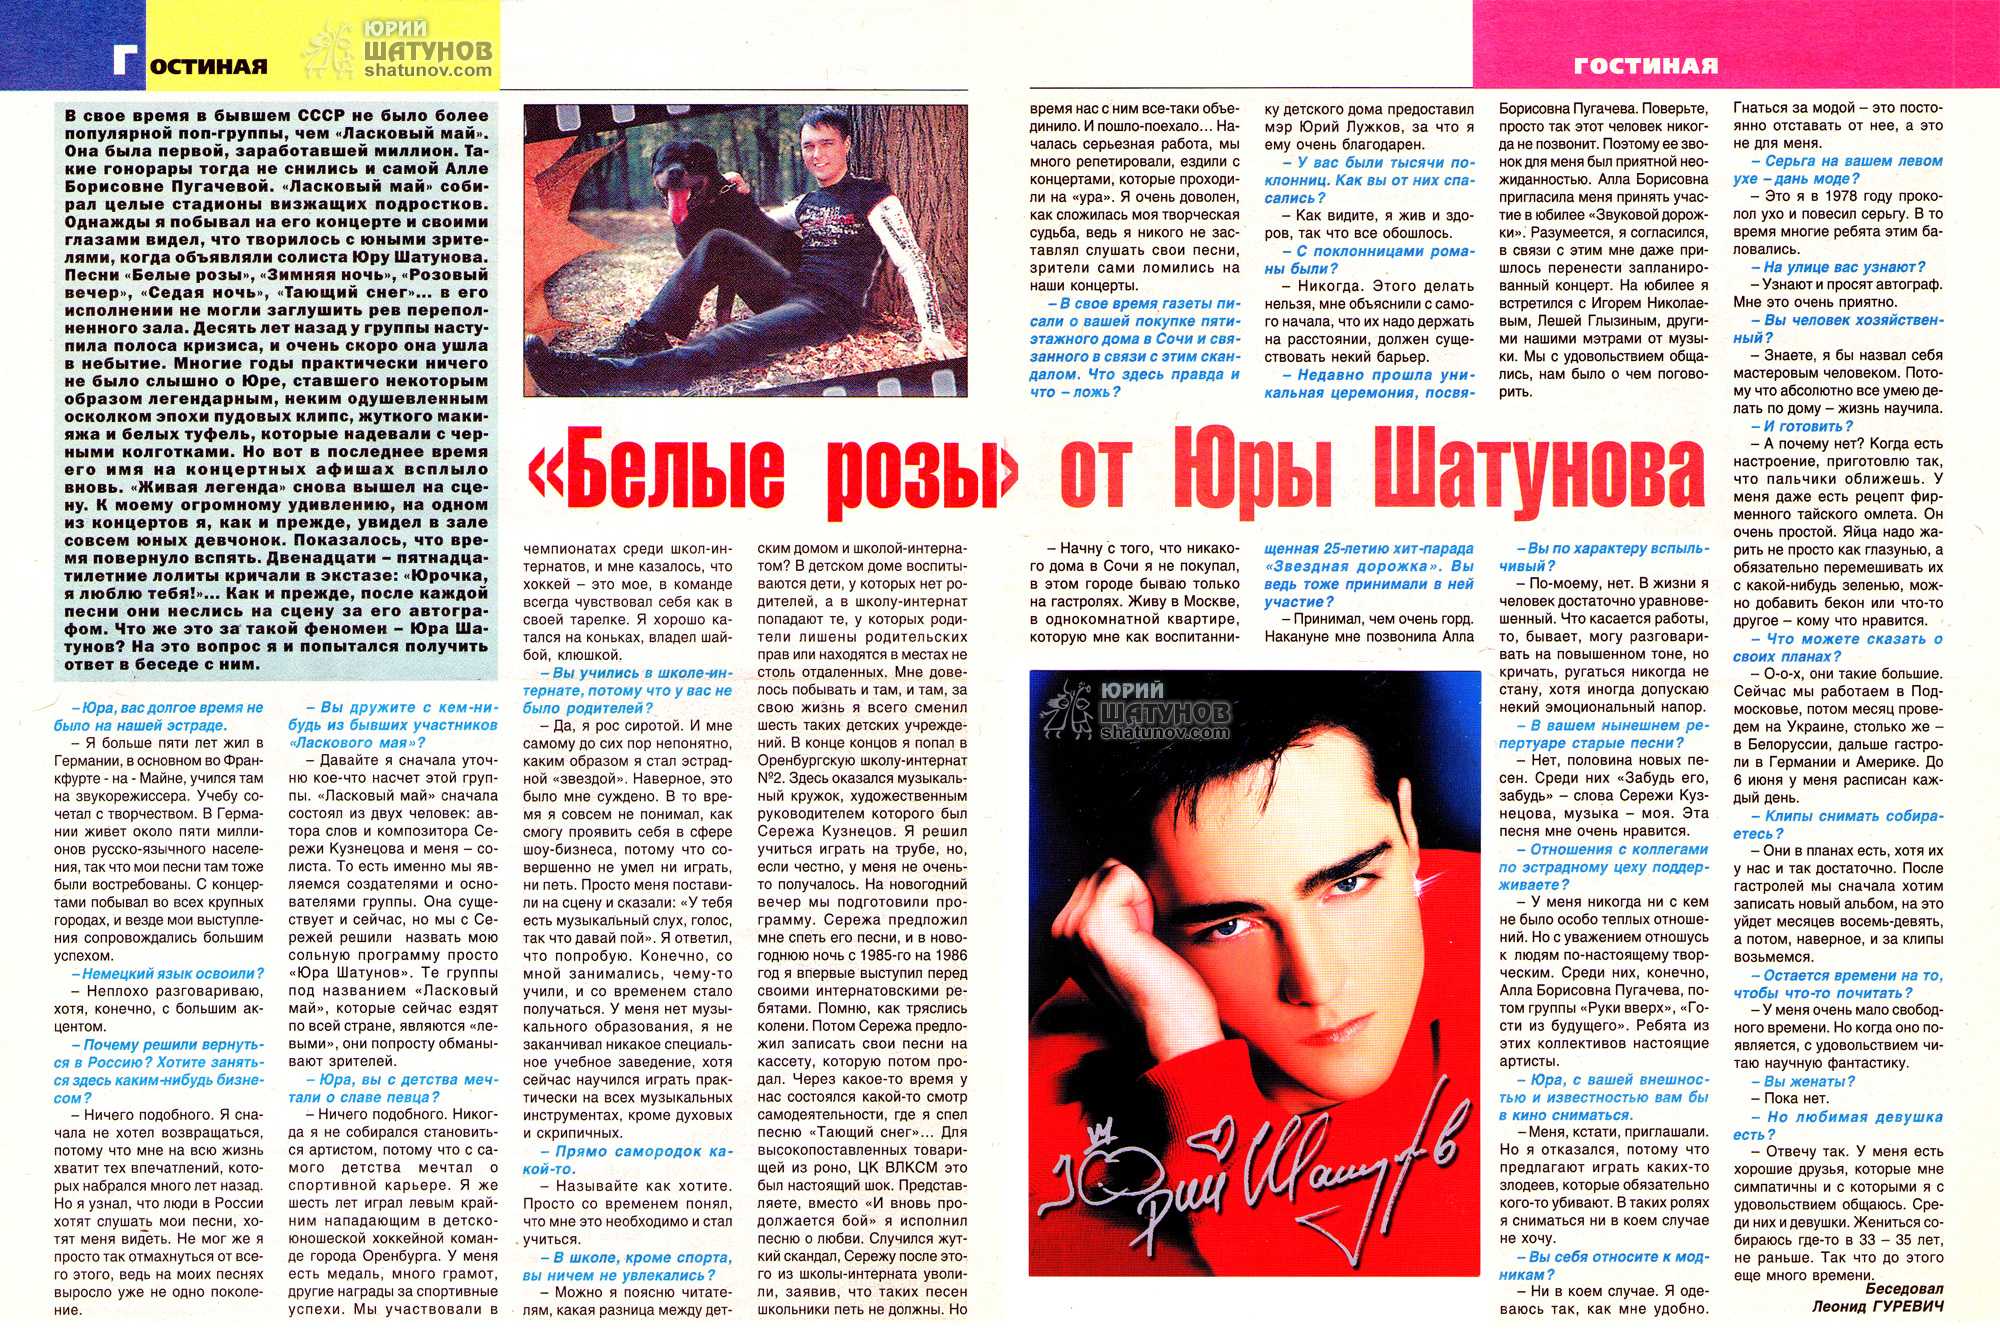 Шатунов песня сколько можно. Шатунов журнал 1990. Шатунов журнал 1989.